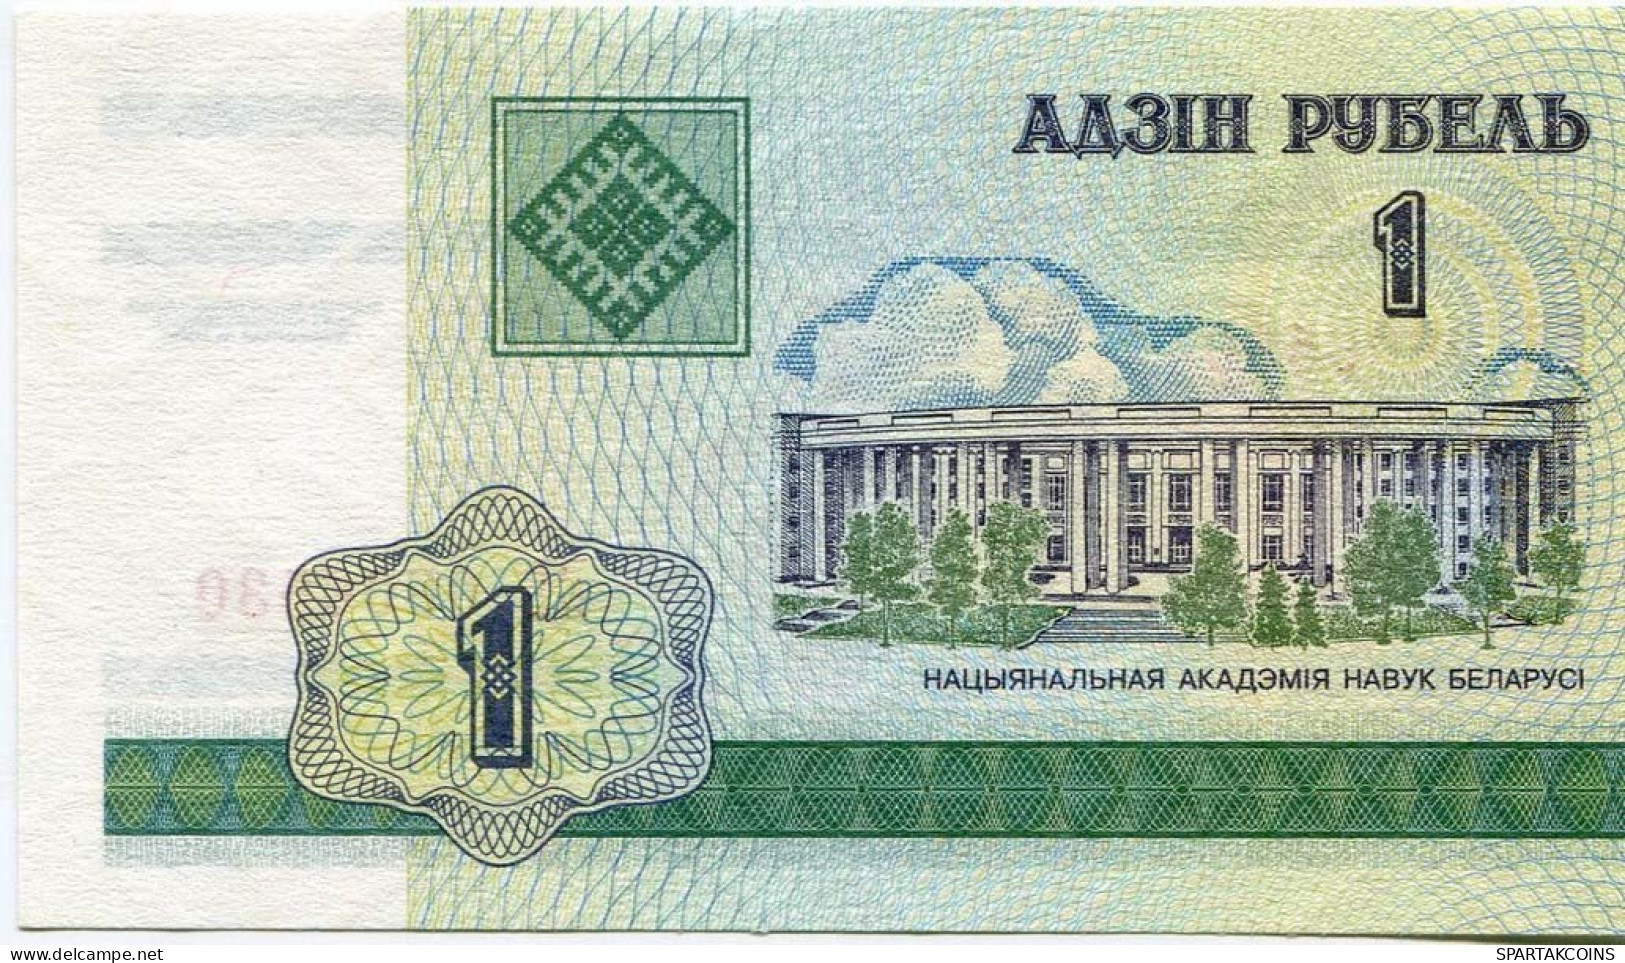 BELARUS 1 RUBLES 2000 National Academy Of Sciences Of Belarus Paper Money Banknote #P10198.V - Lokale Ausgaben